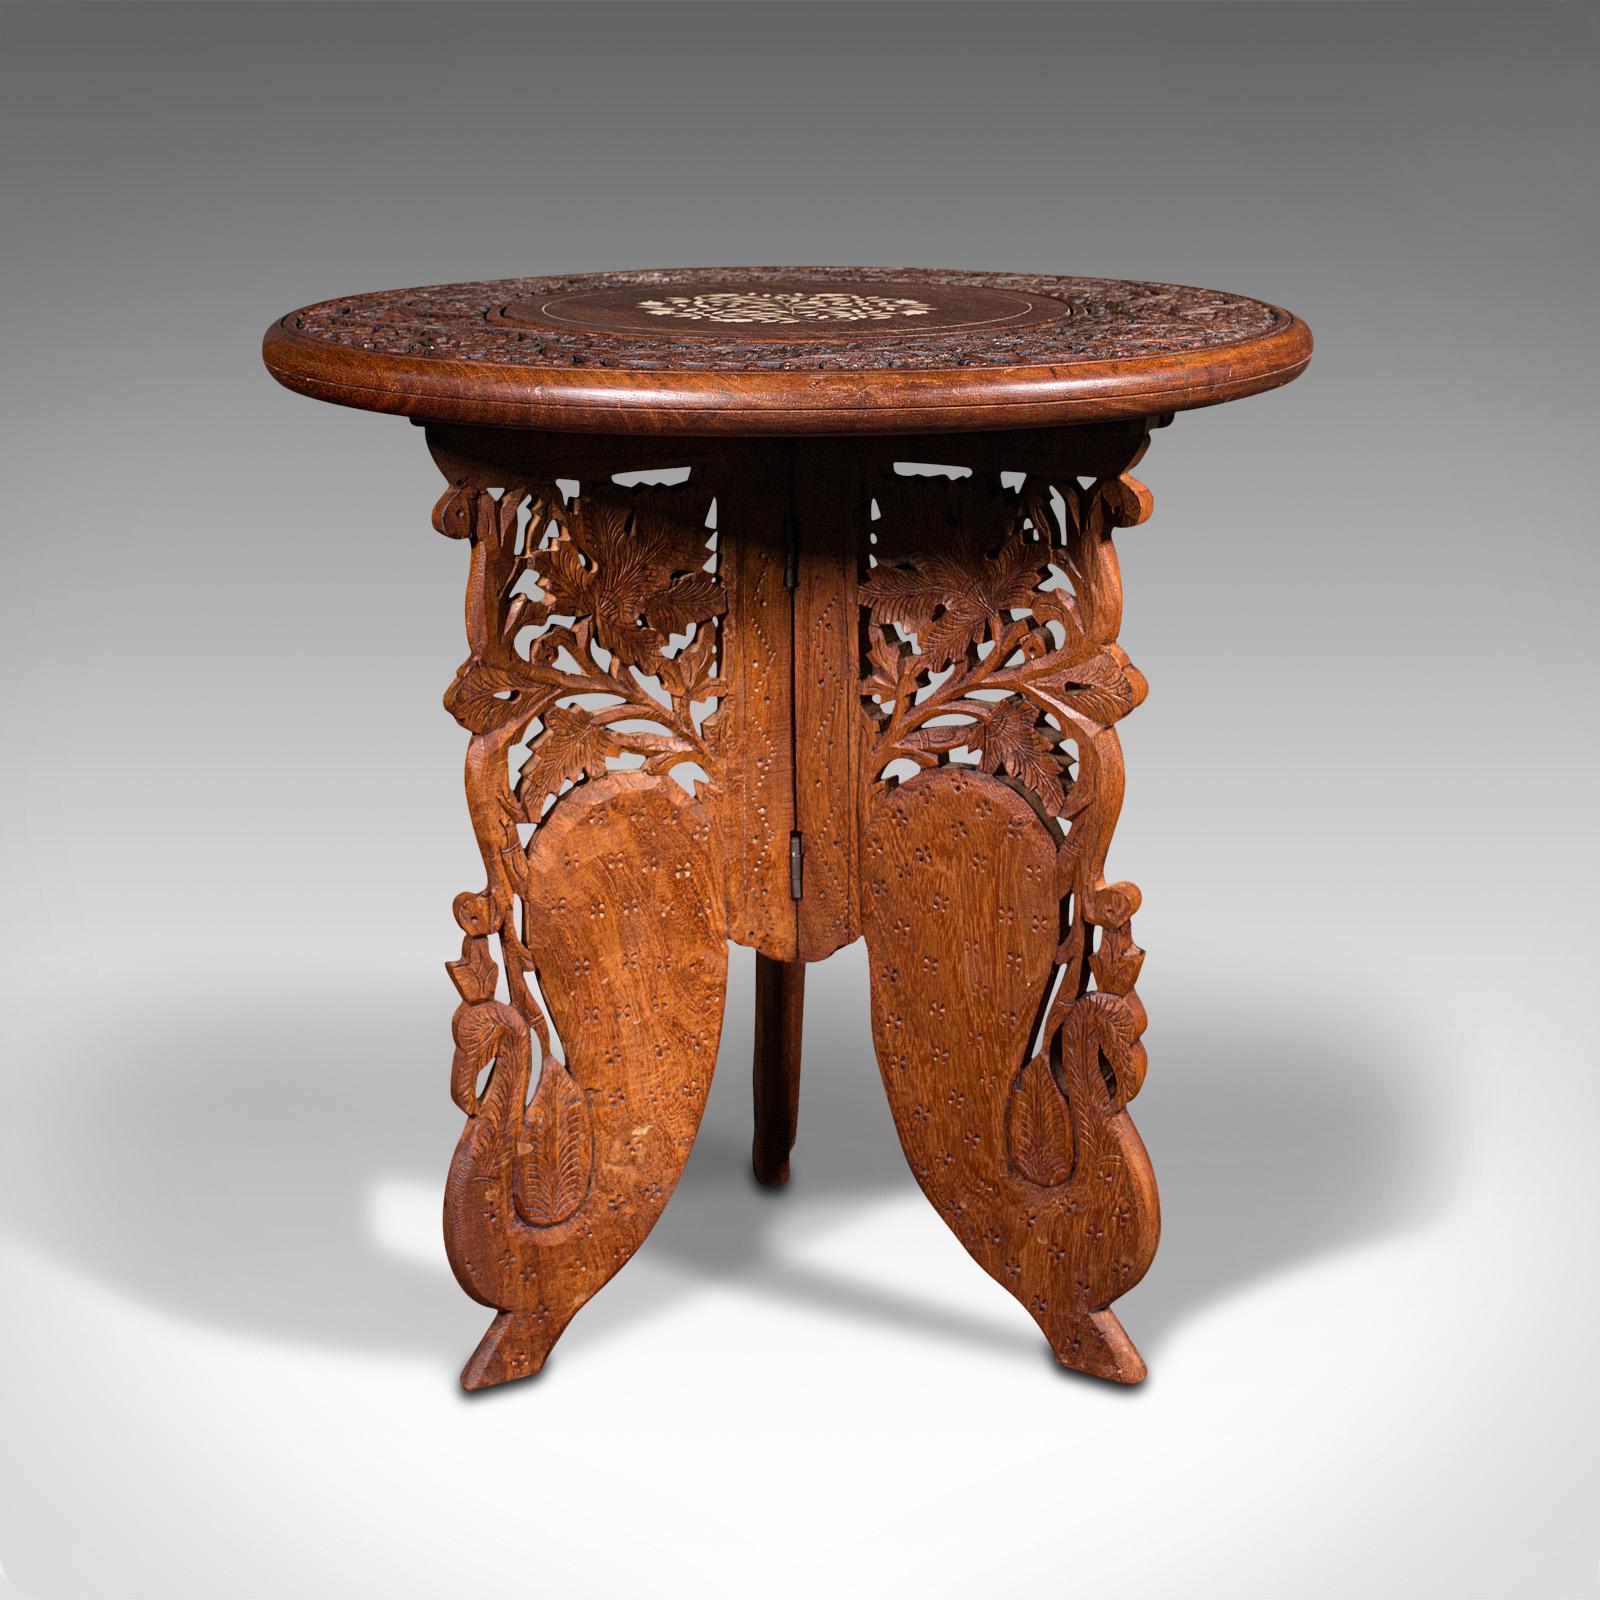 Il s'agit d'une table d'appoint circulaire vintage. Une lampe ou table à vin anglo-indienne en teck, de style Art Déco colonial, datant du milieu du 20e siècle, vers 1940.

Doté d'un goût exotique distinctif
Présente une patine d'usage désirable